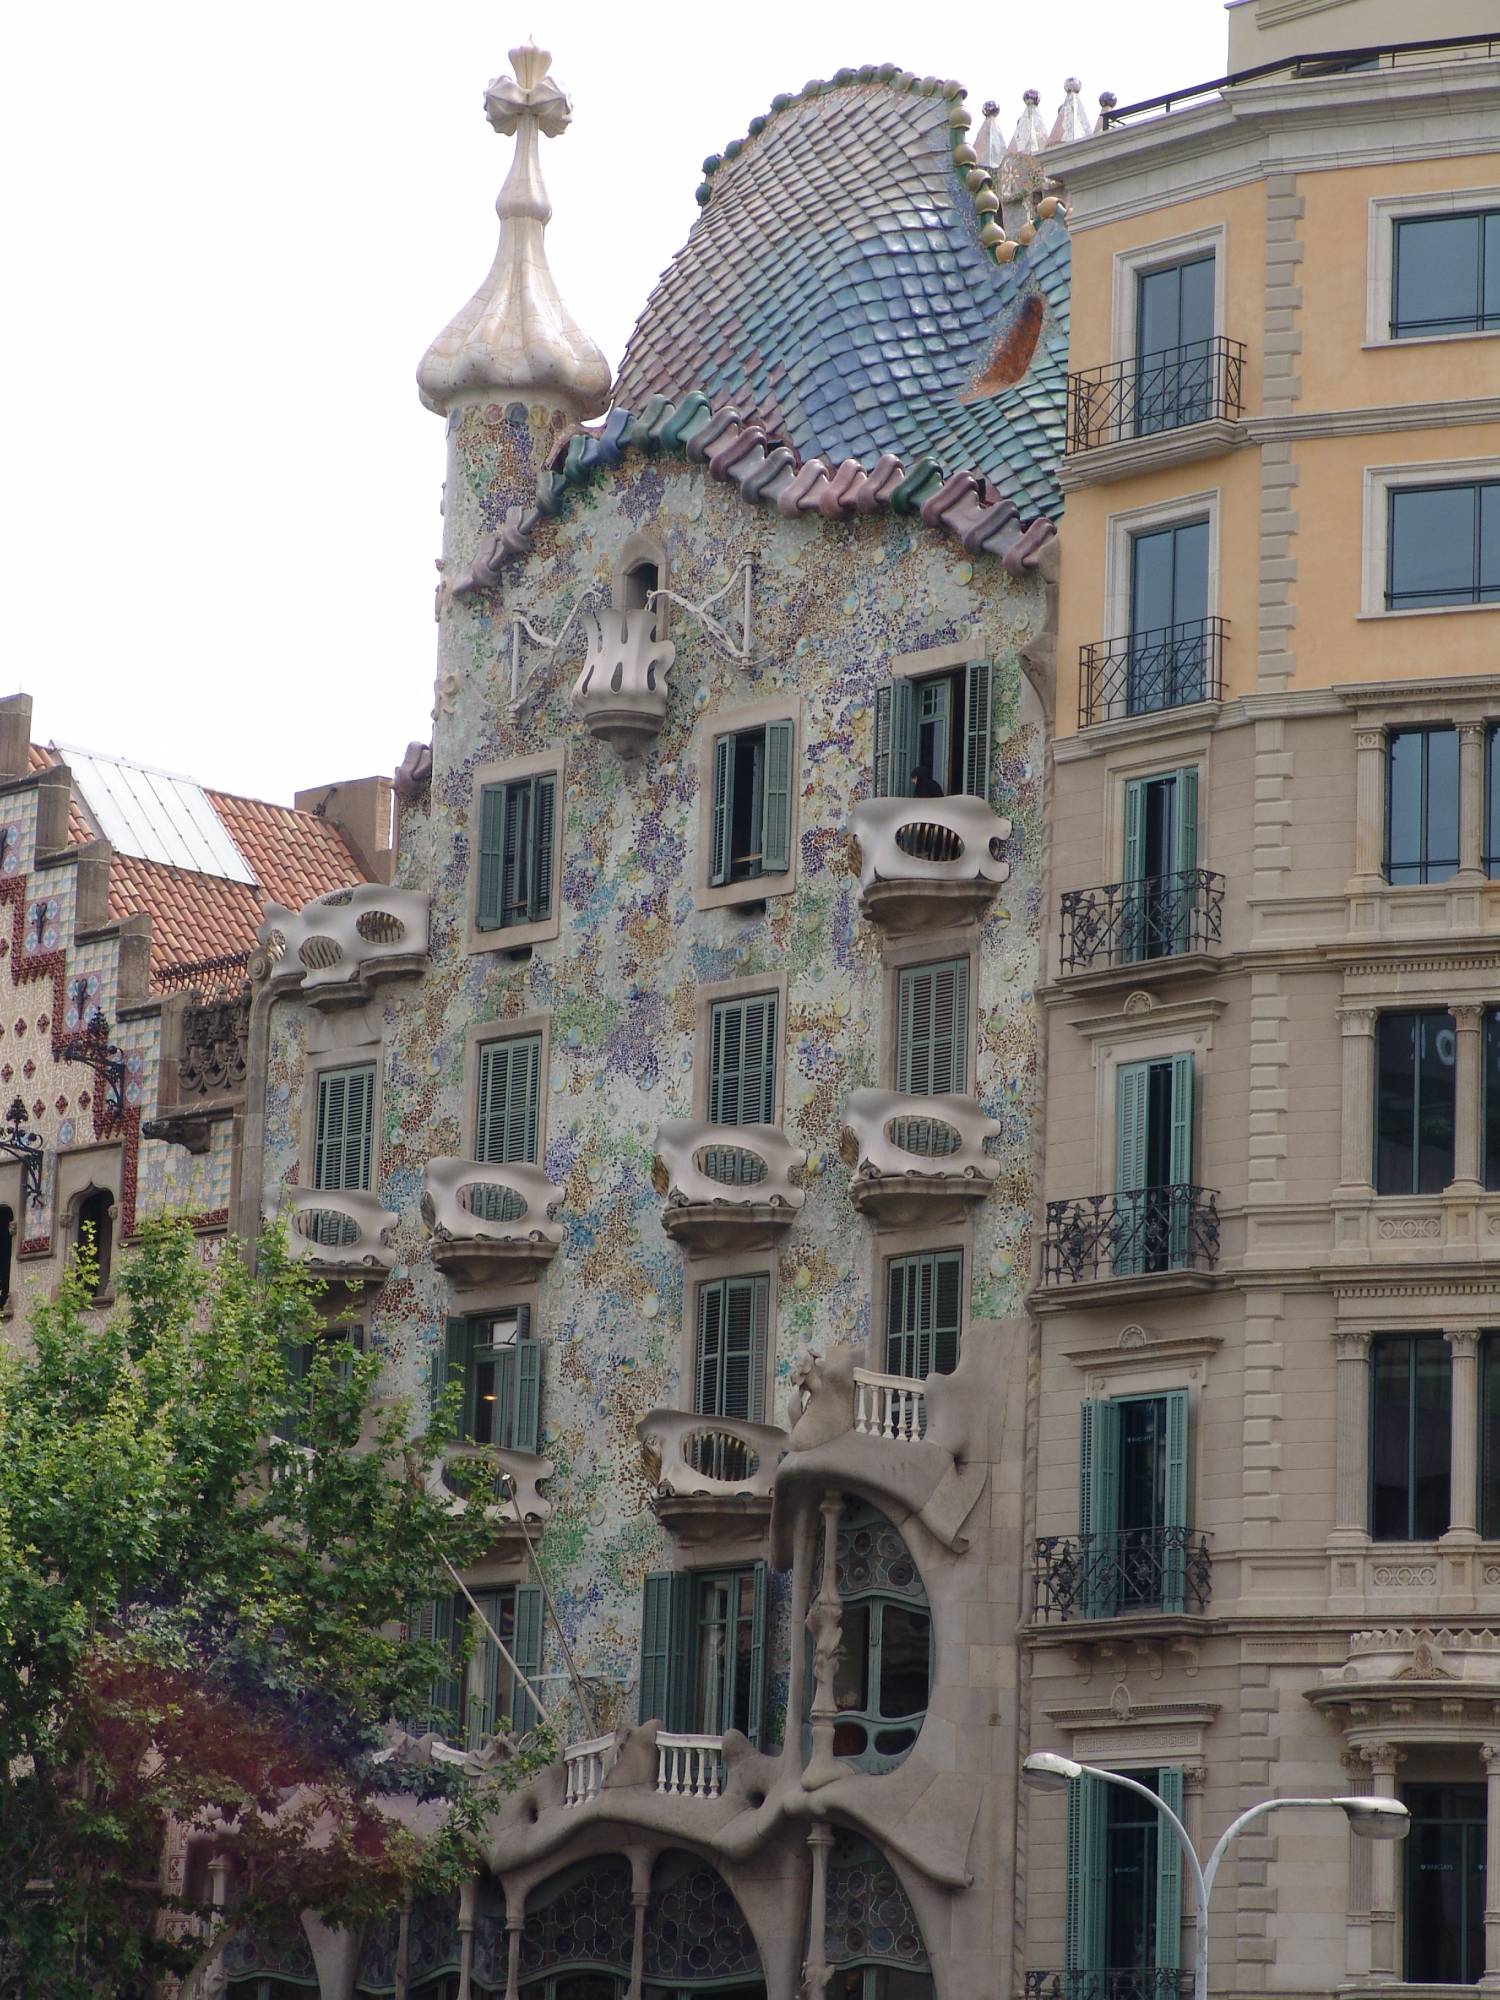 Explore the Disney Cruise Line port city of Barcelona, Spain |PassPorter.com